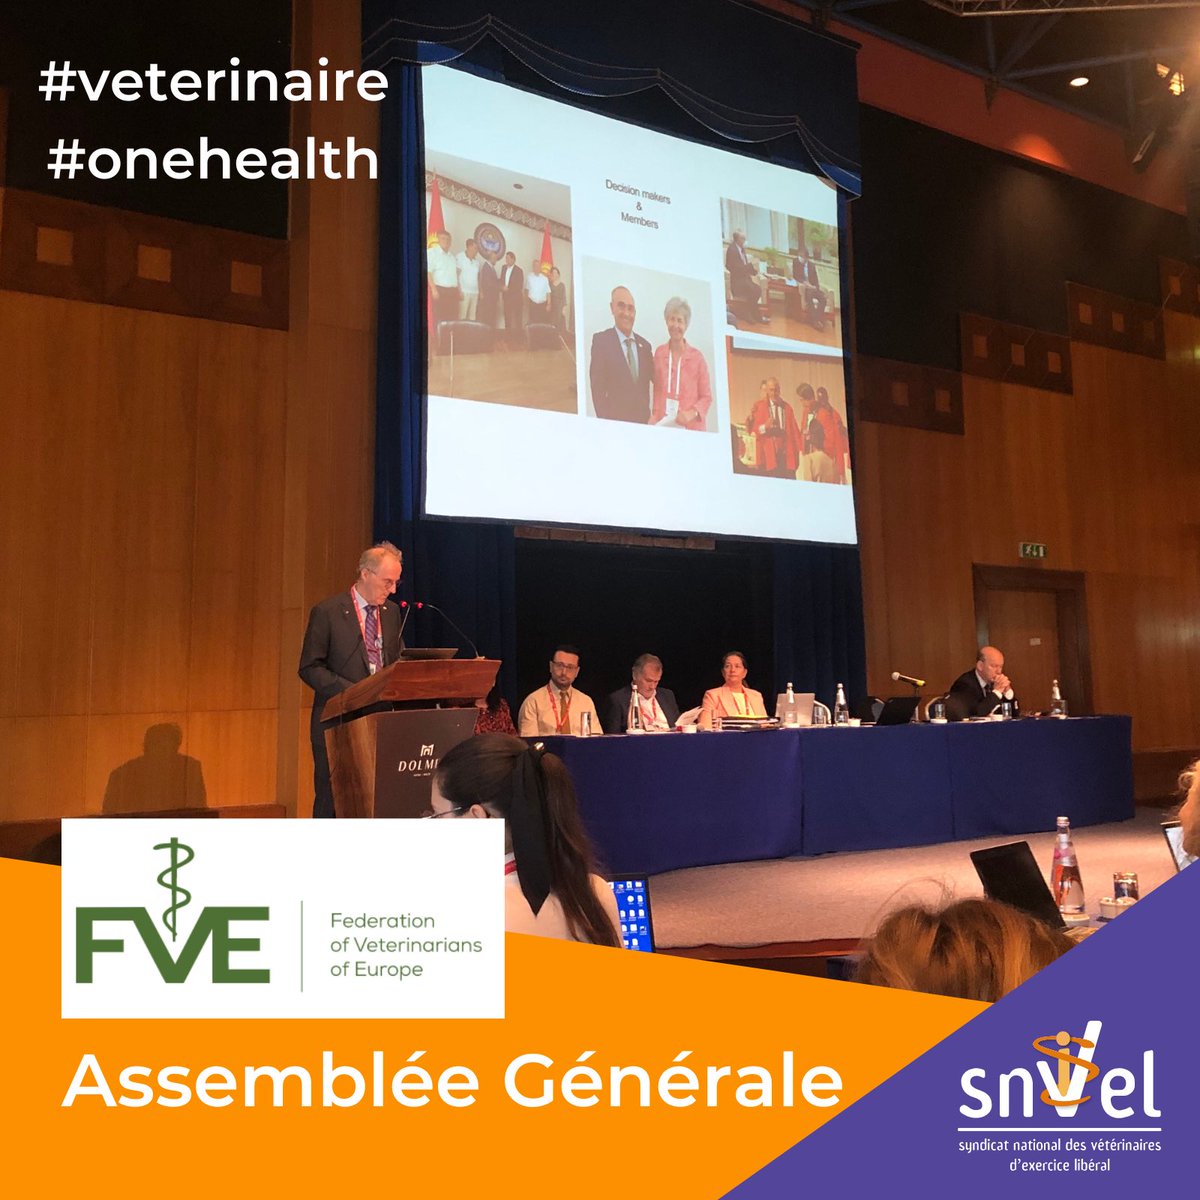 La représentation française participe à l’Assemblée générale de @FVEurope 👉 #onehealth #santeanimale #veterinaire